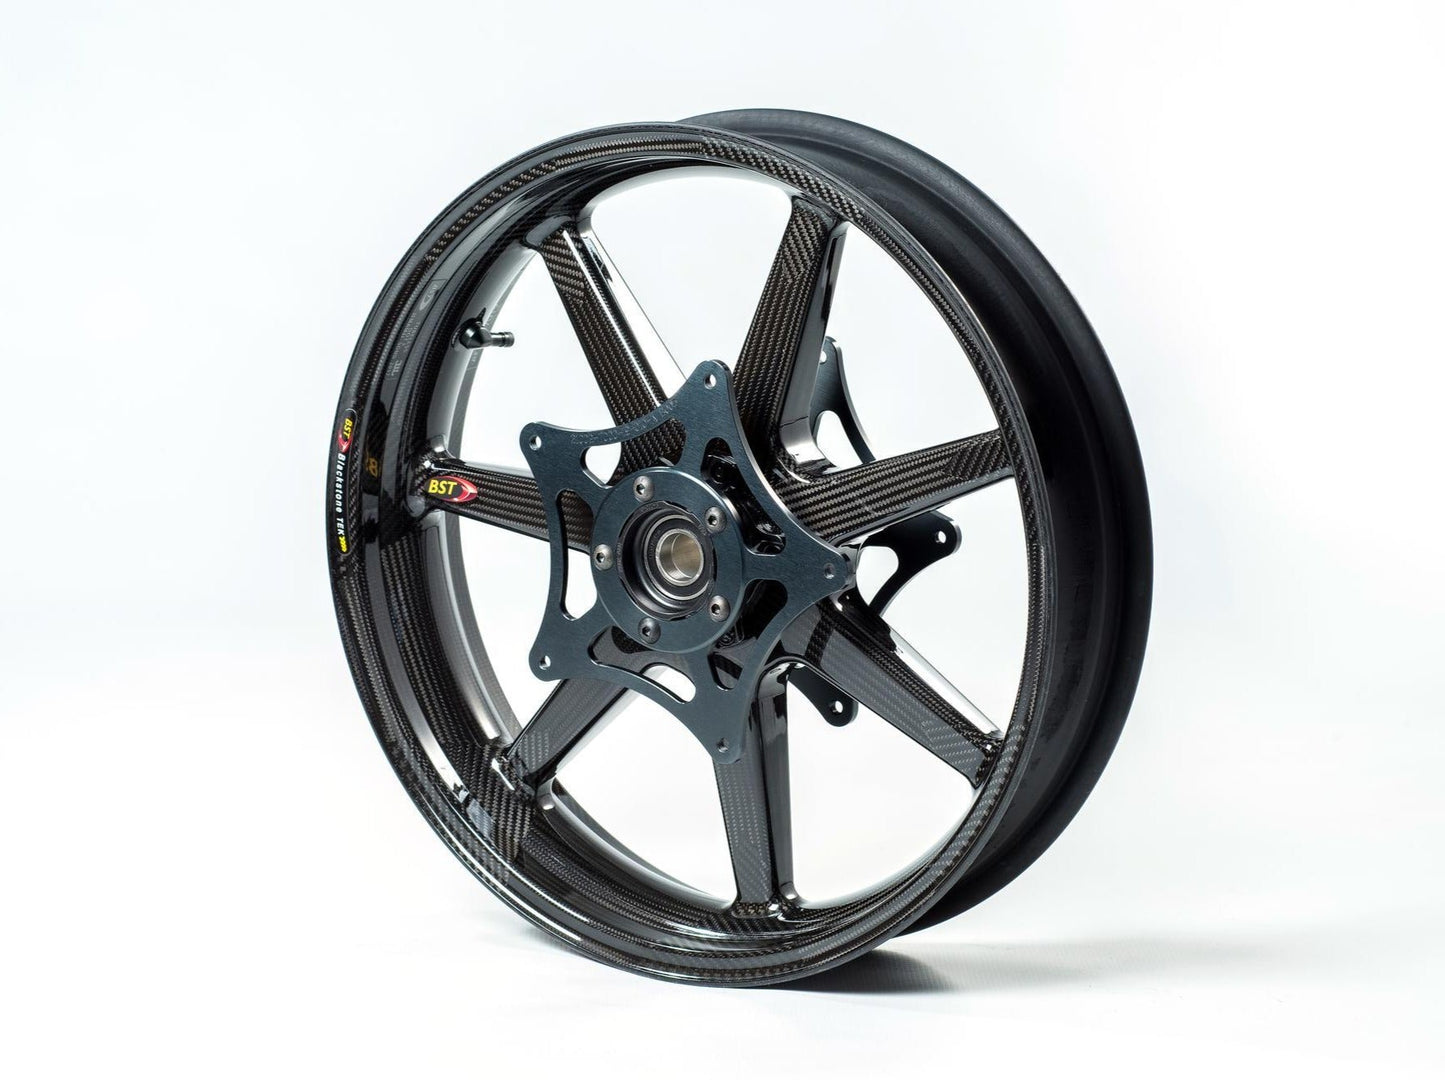 BST BMW K1300S / K1300R Carbon Wheel "Panther TEK" (front, 7 straight spokes, black hubs)